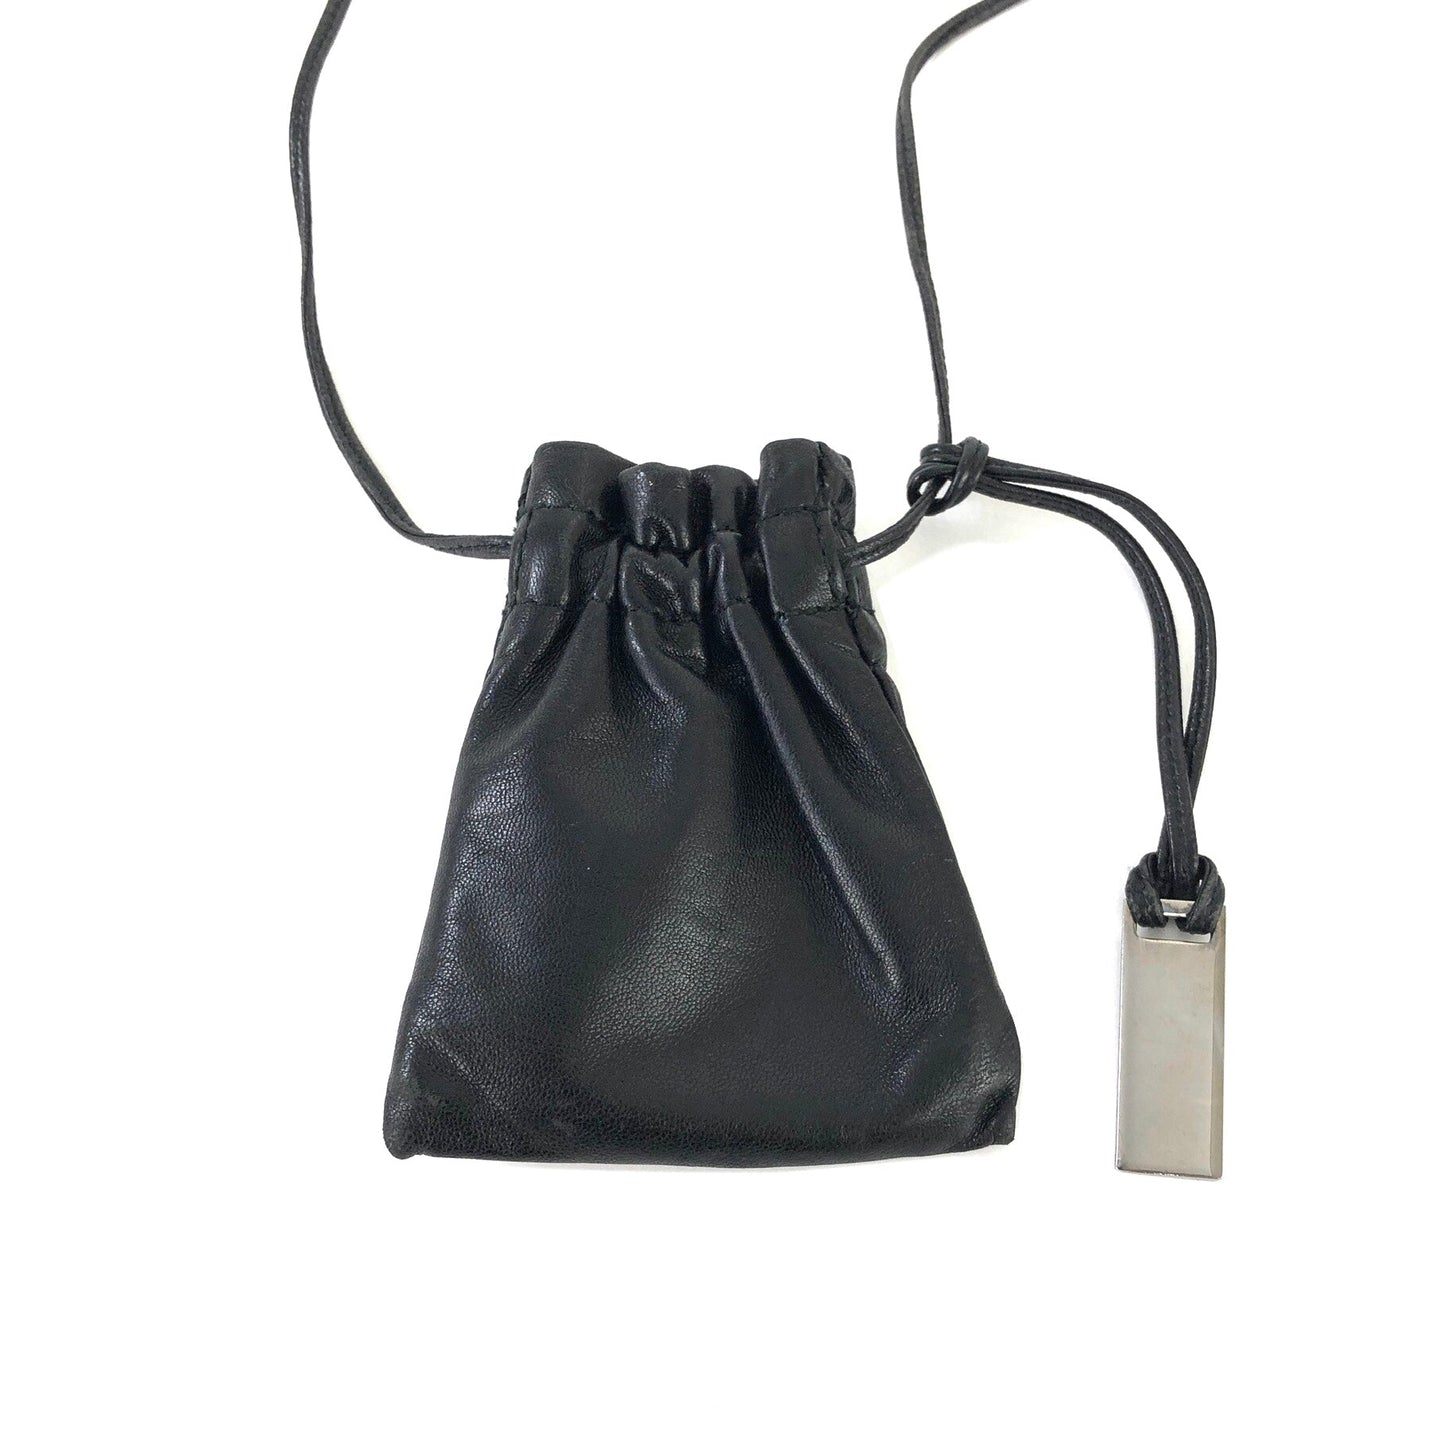 GUCCI Logo Leather Drawstring Small Shoulder bag Black Vintage Old Gucci pug76n